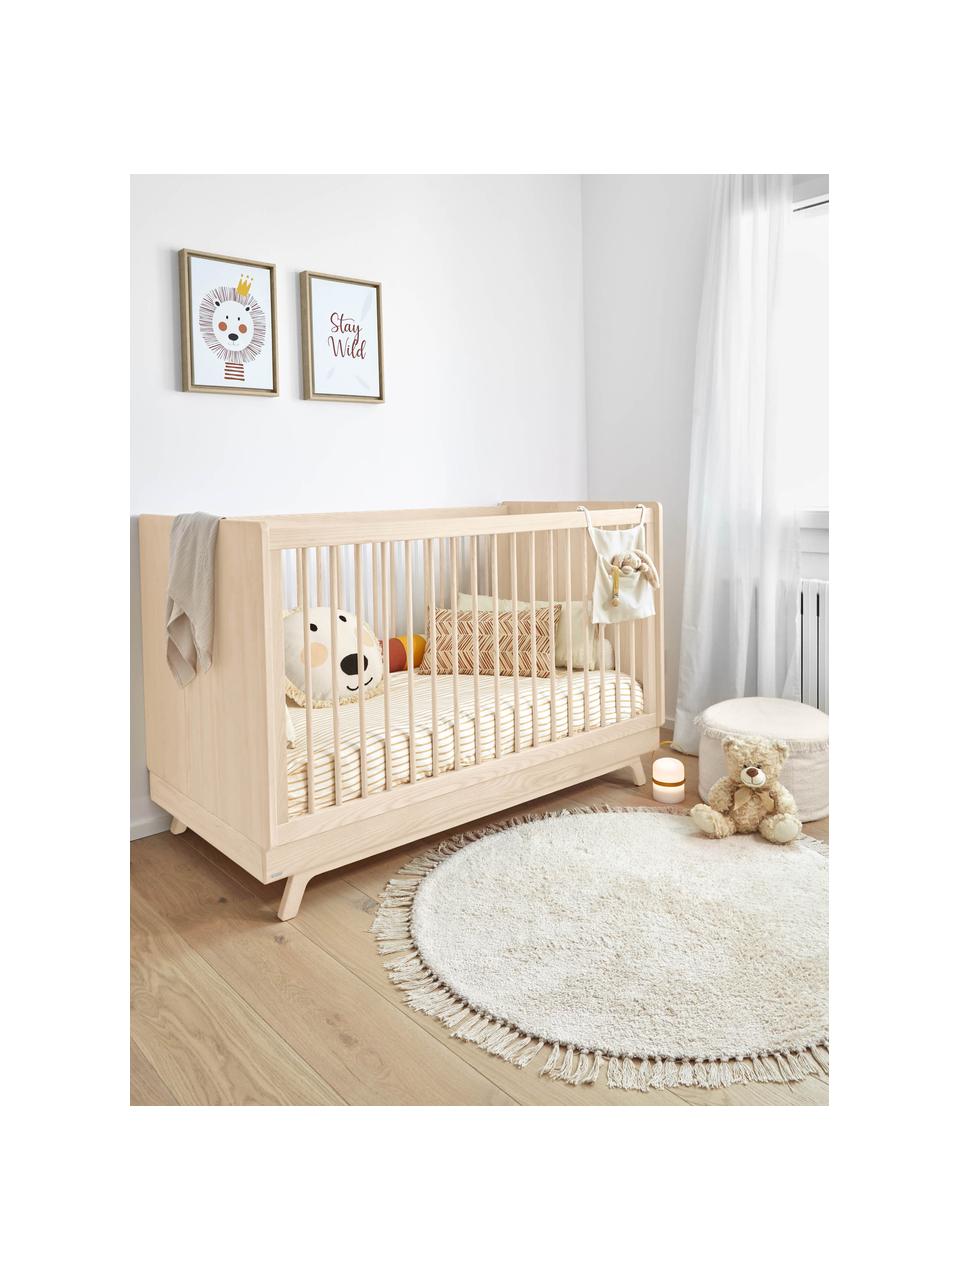 Baby-Bett Maralis aus Buchenholz, 70 x 140 cm, Buchenholz, Sperrholz, Helles Holz, B 70 x L 140 cm